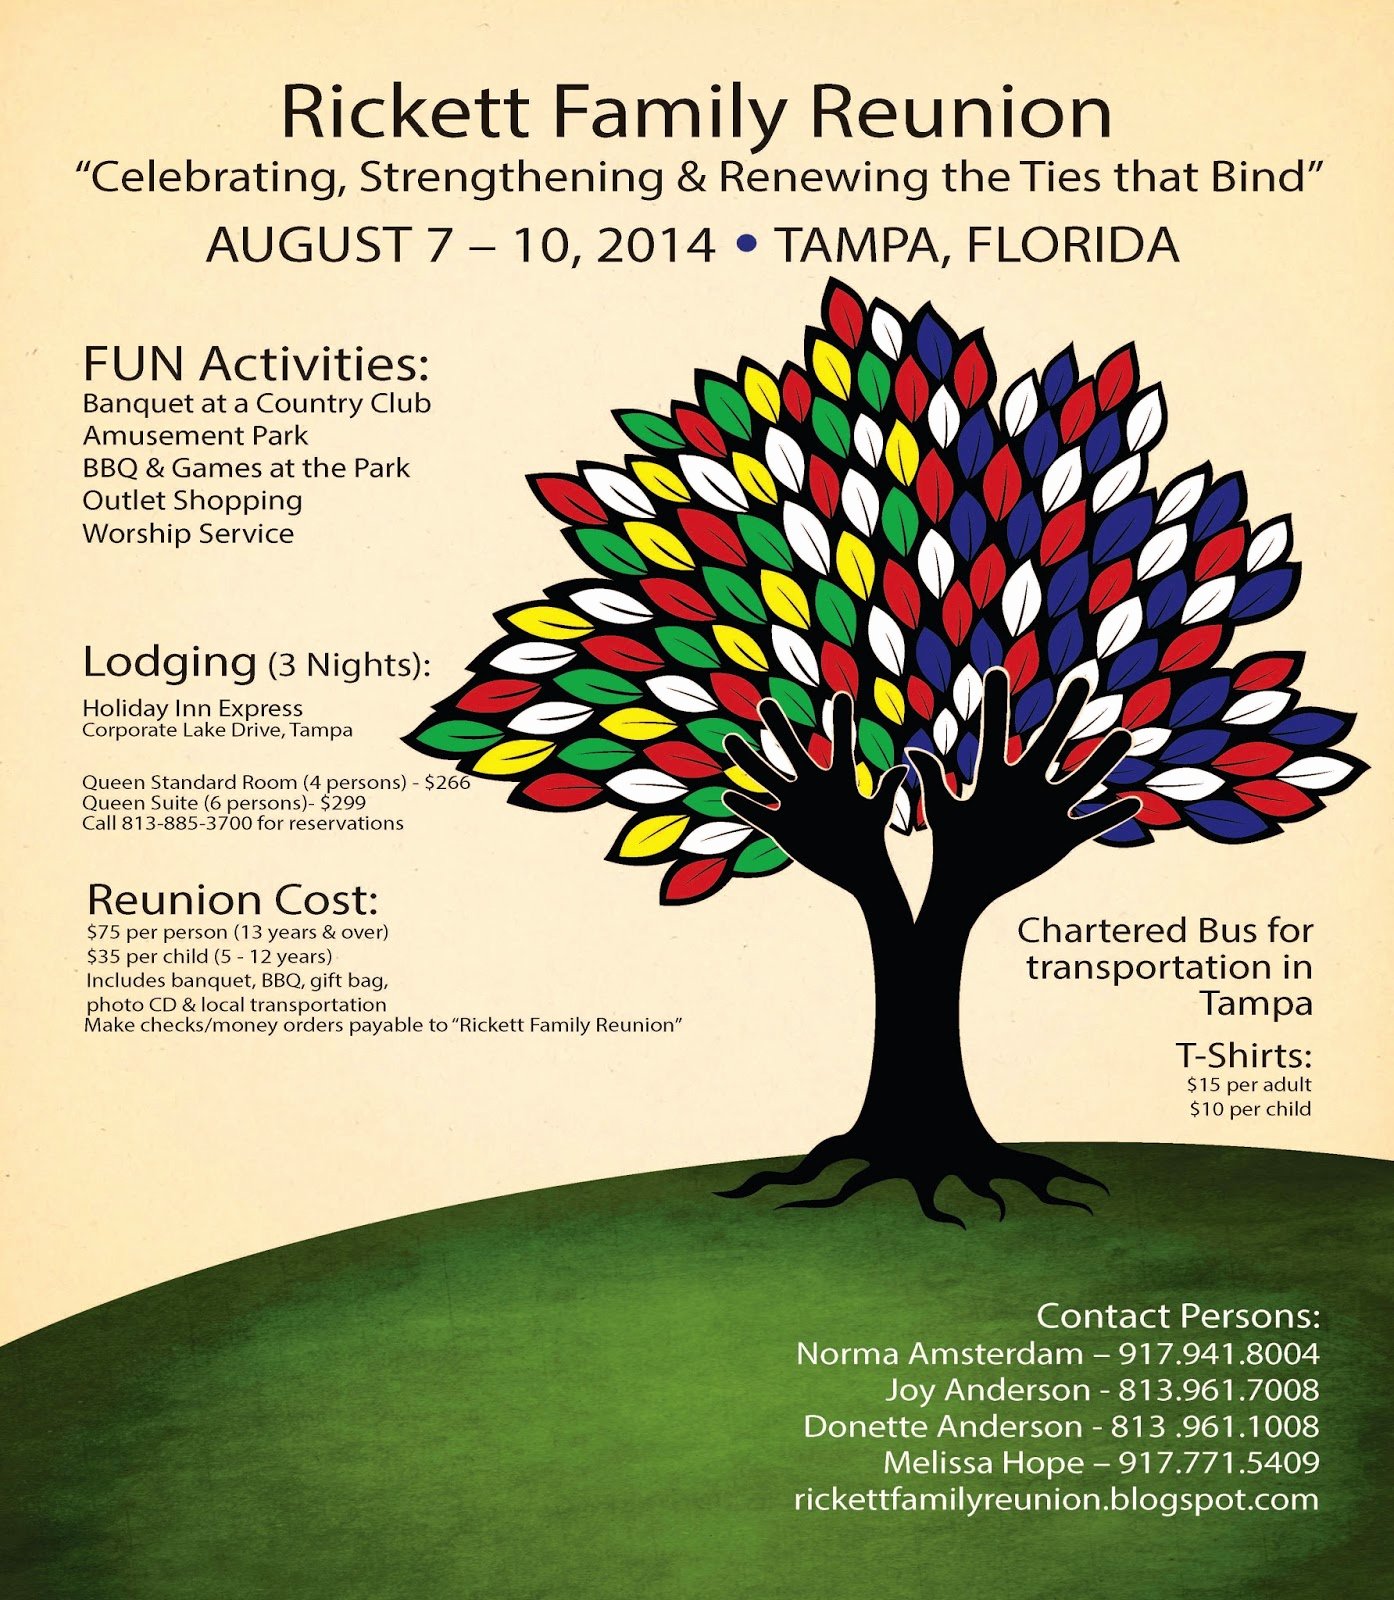 Rickett Family Reunion Blog